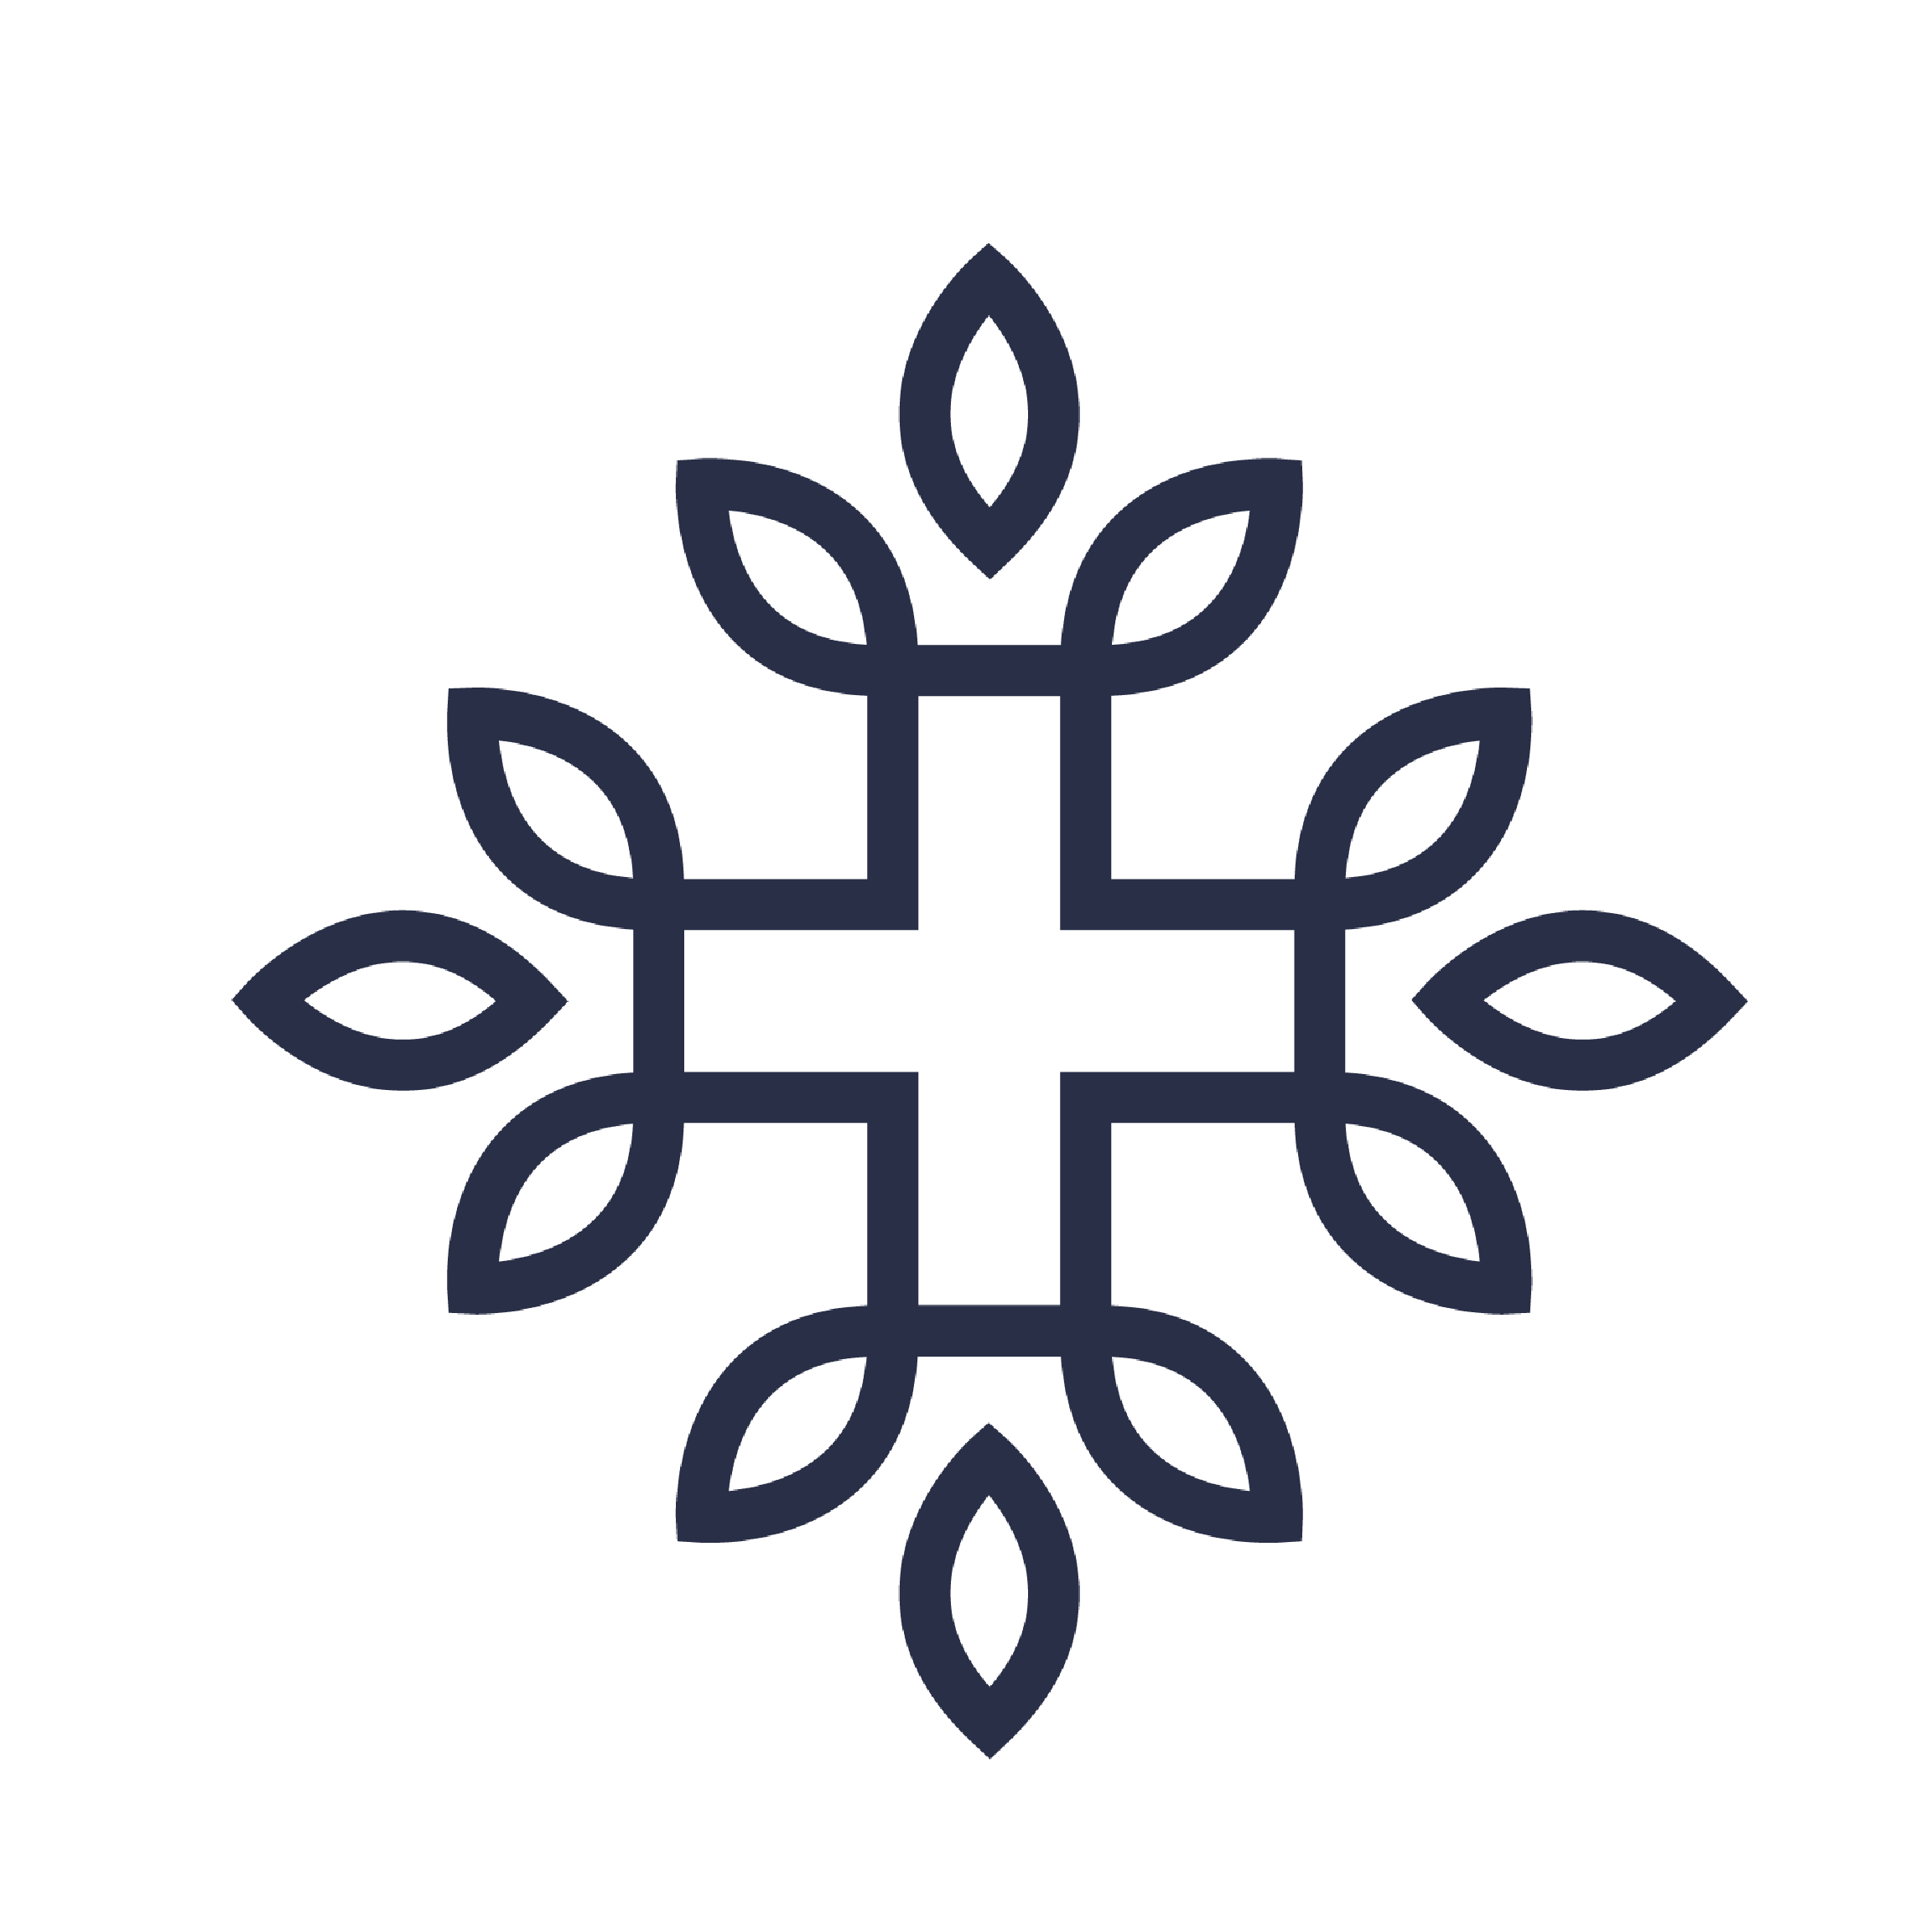 Neurogan Logo